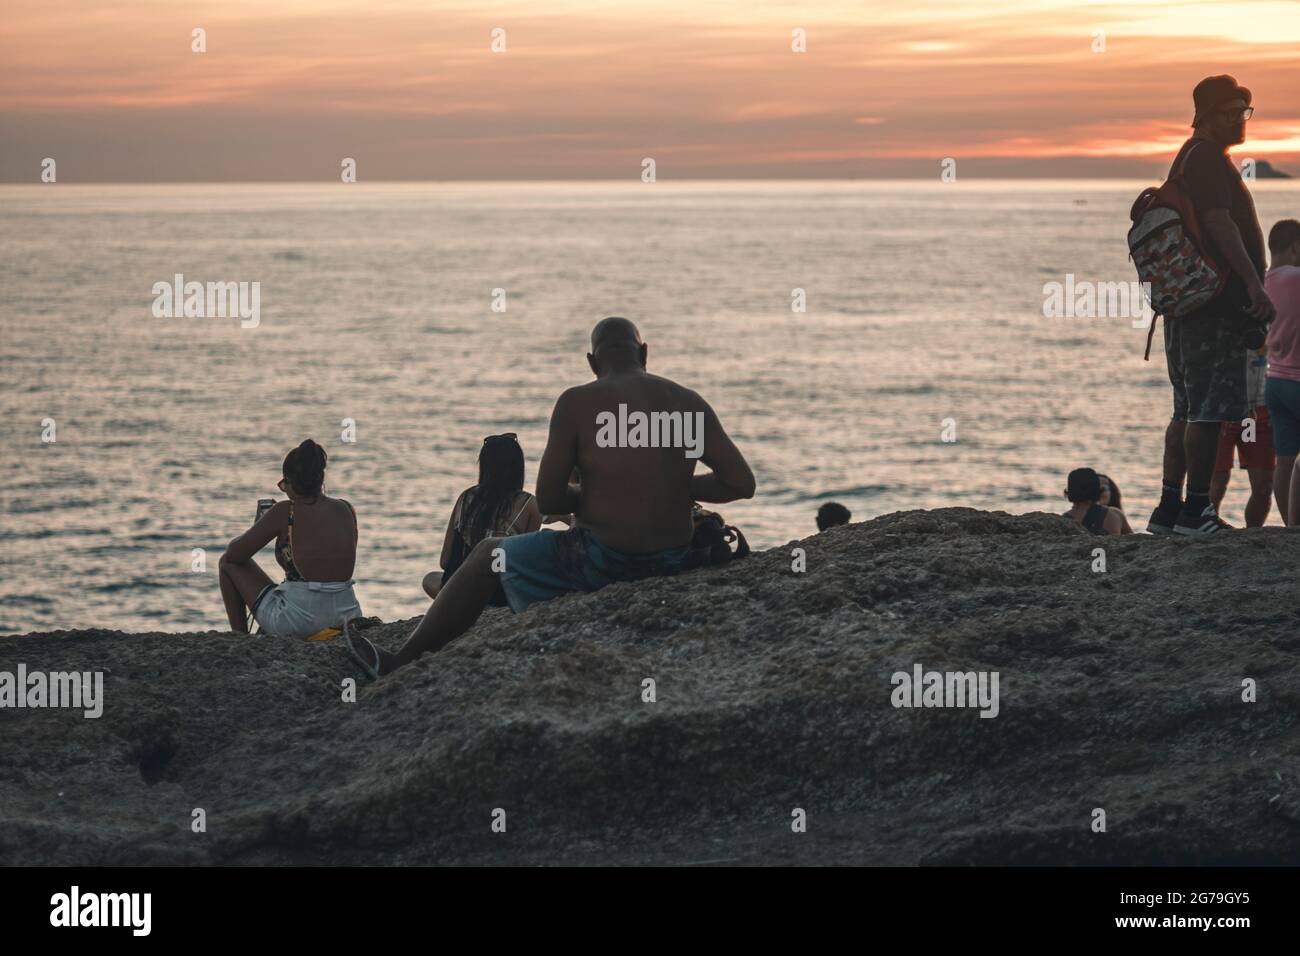 Un luogo magico: La gente applaude quando il sole tramonta alla roccia di Arpoador con vista della spiaggia di Ipanema e le montagne di Morro Dois Irmaos e Leblon nella parte posteriore. Macchina fotografica: Leica M10 Foto Stock